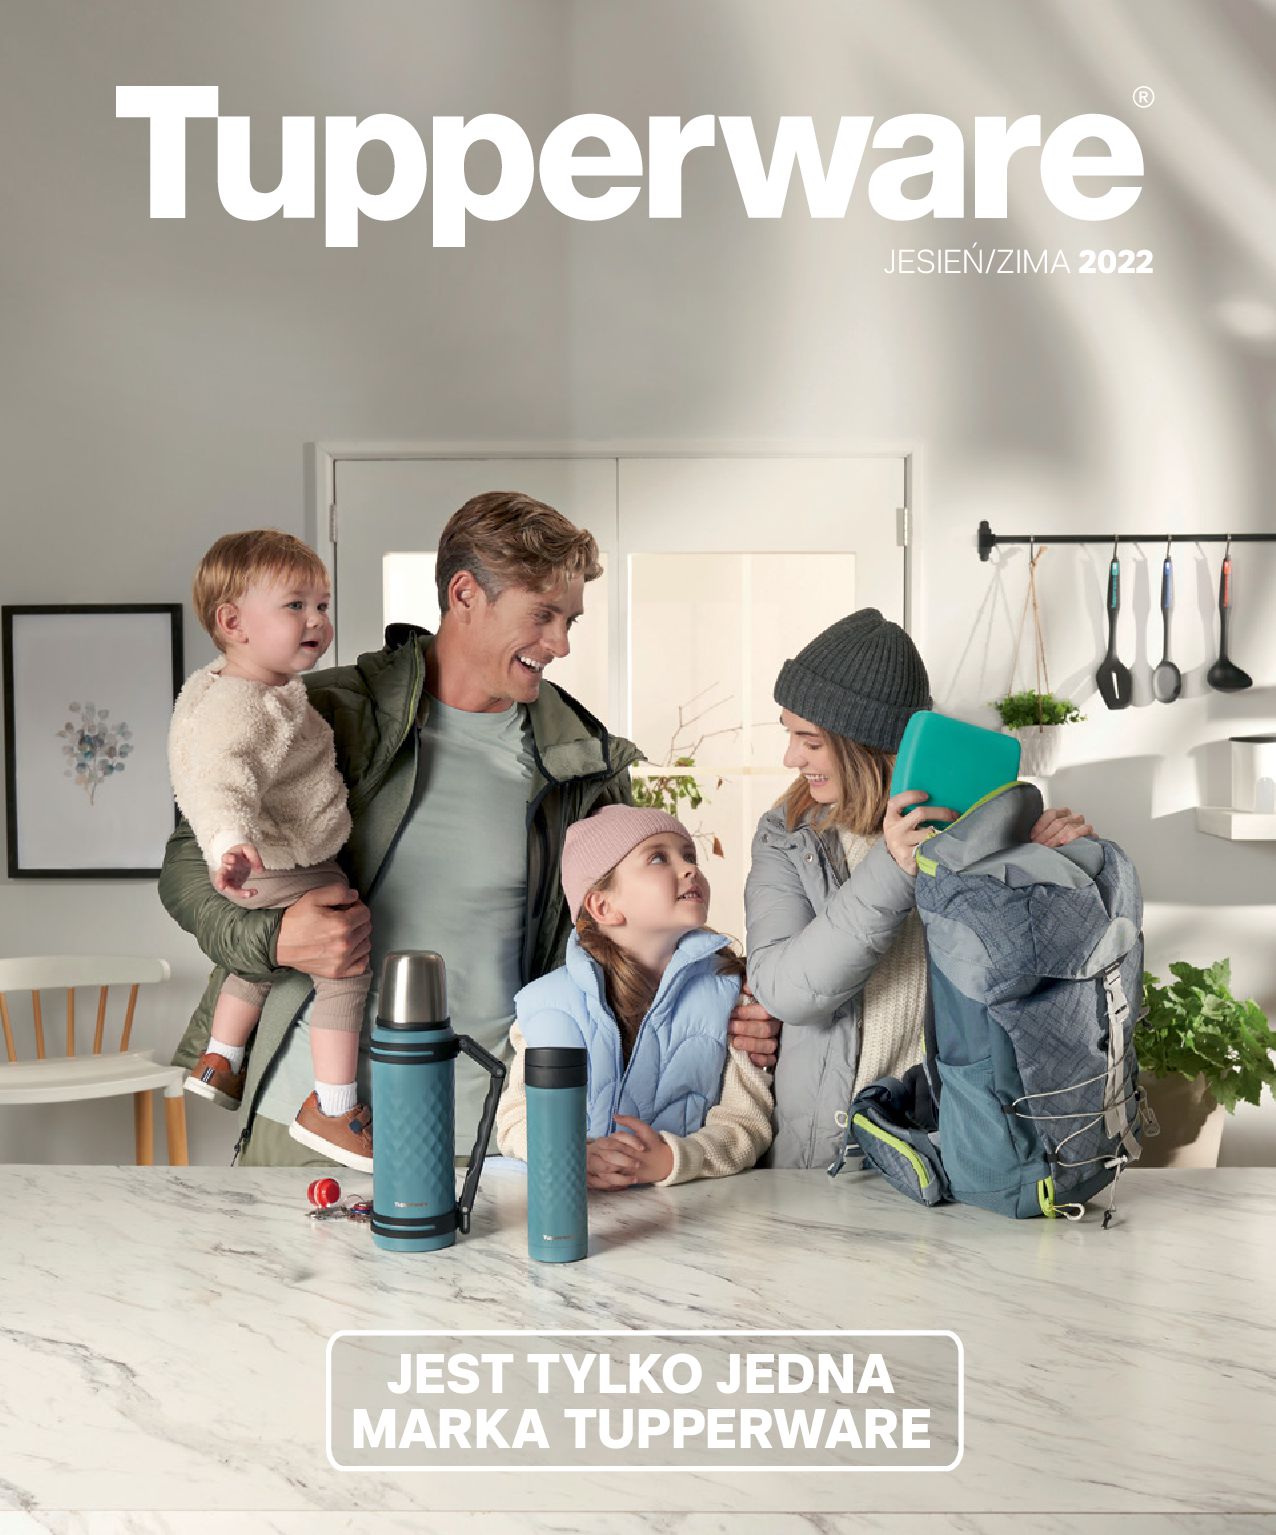 Gazetka Tupperware: Tupperware - katalog Jesień/ Zima 2022 2022-10-03 page-1